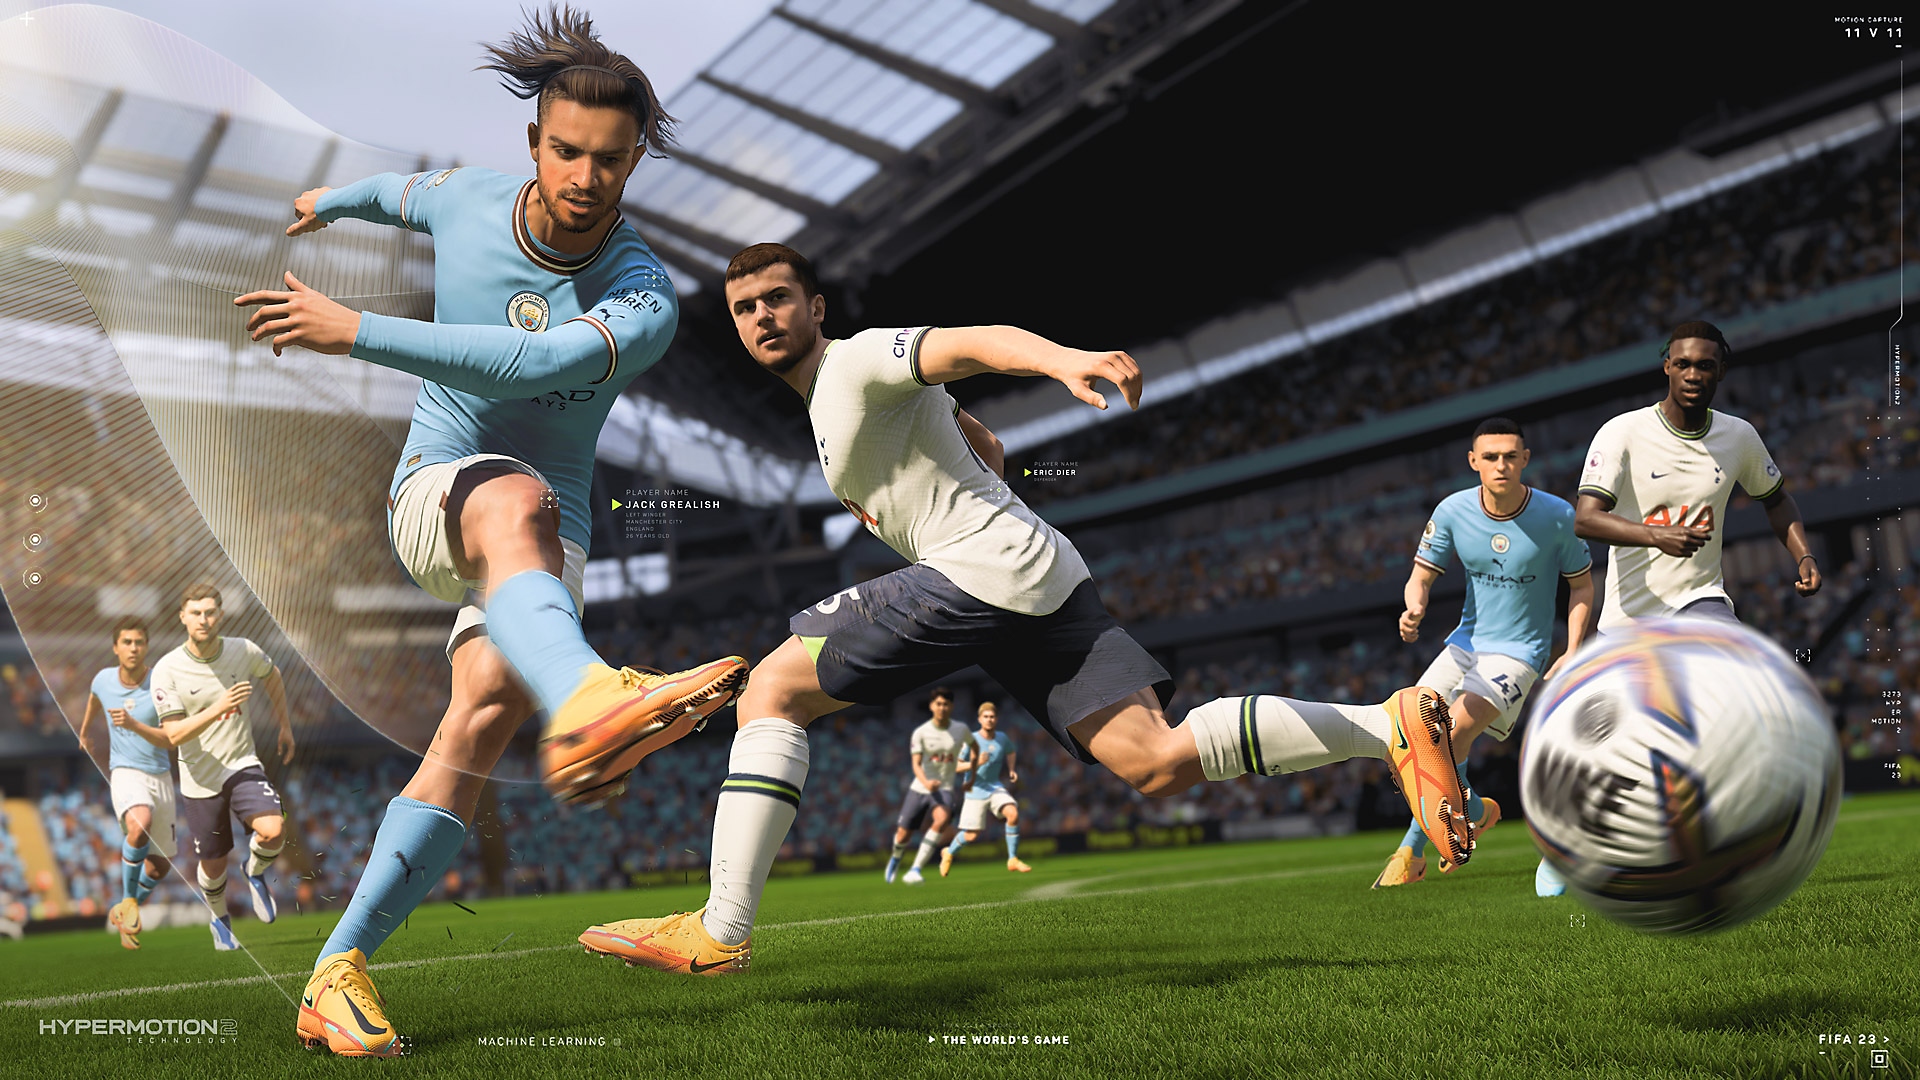 Zrzut ekranu z gry EA Sports FIFA 23 pokazujący gracza kopiącego piłkę